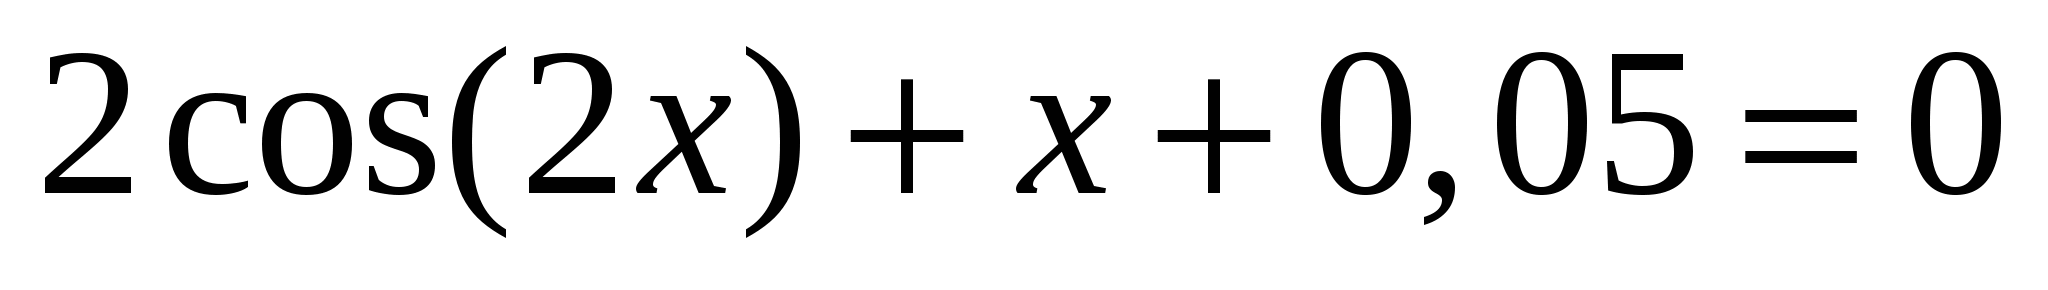 Решение различных математических задач, используя средства MS Excel.